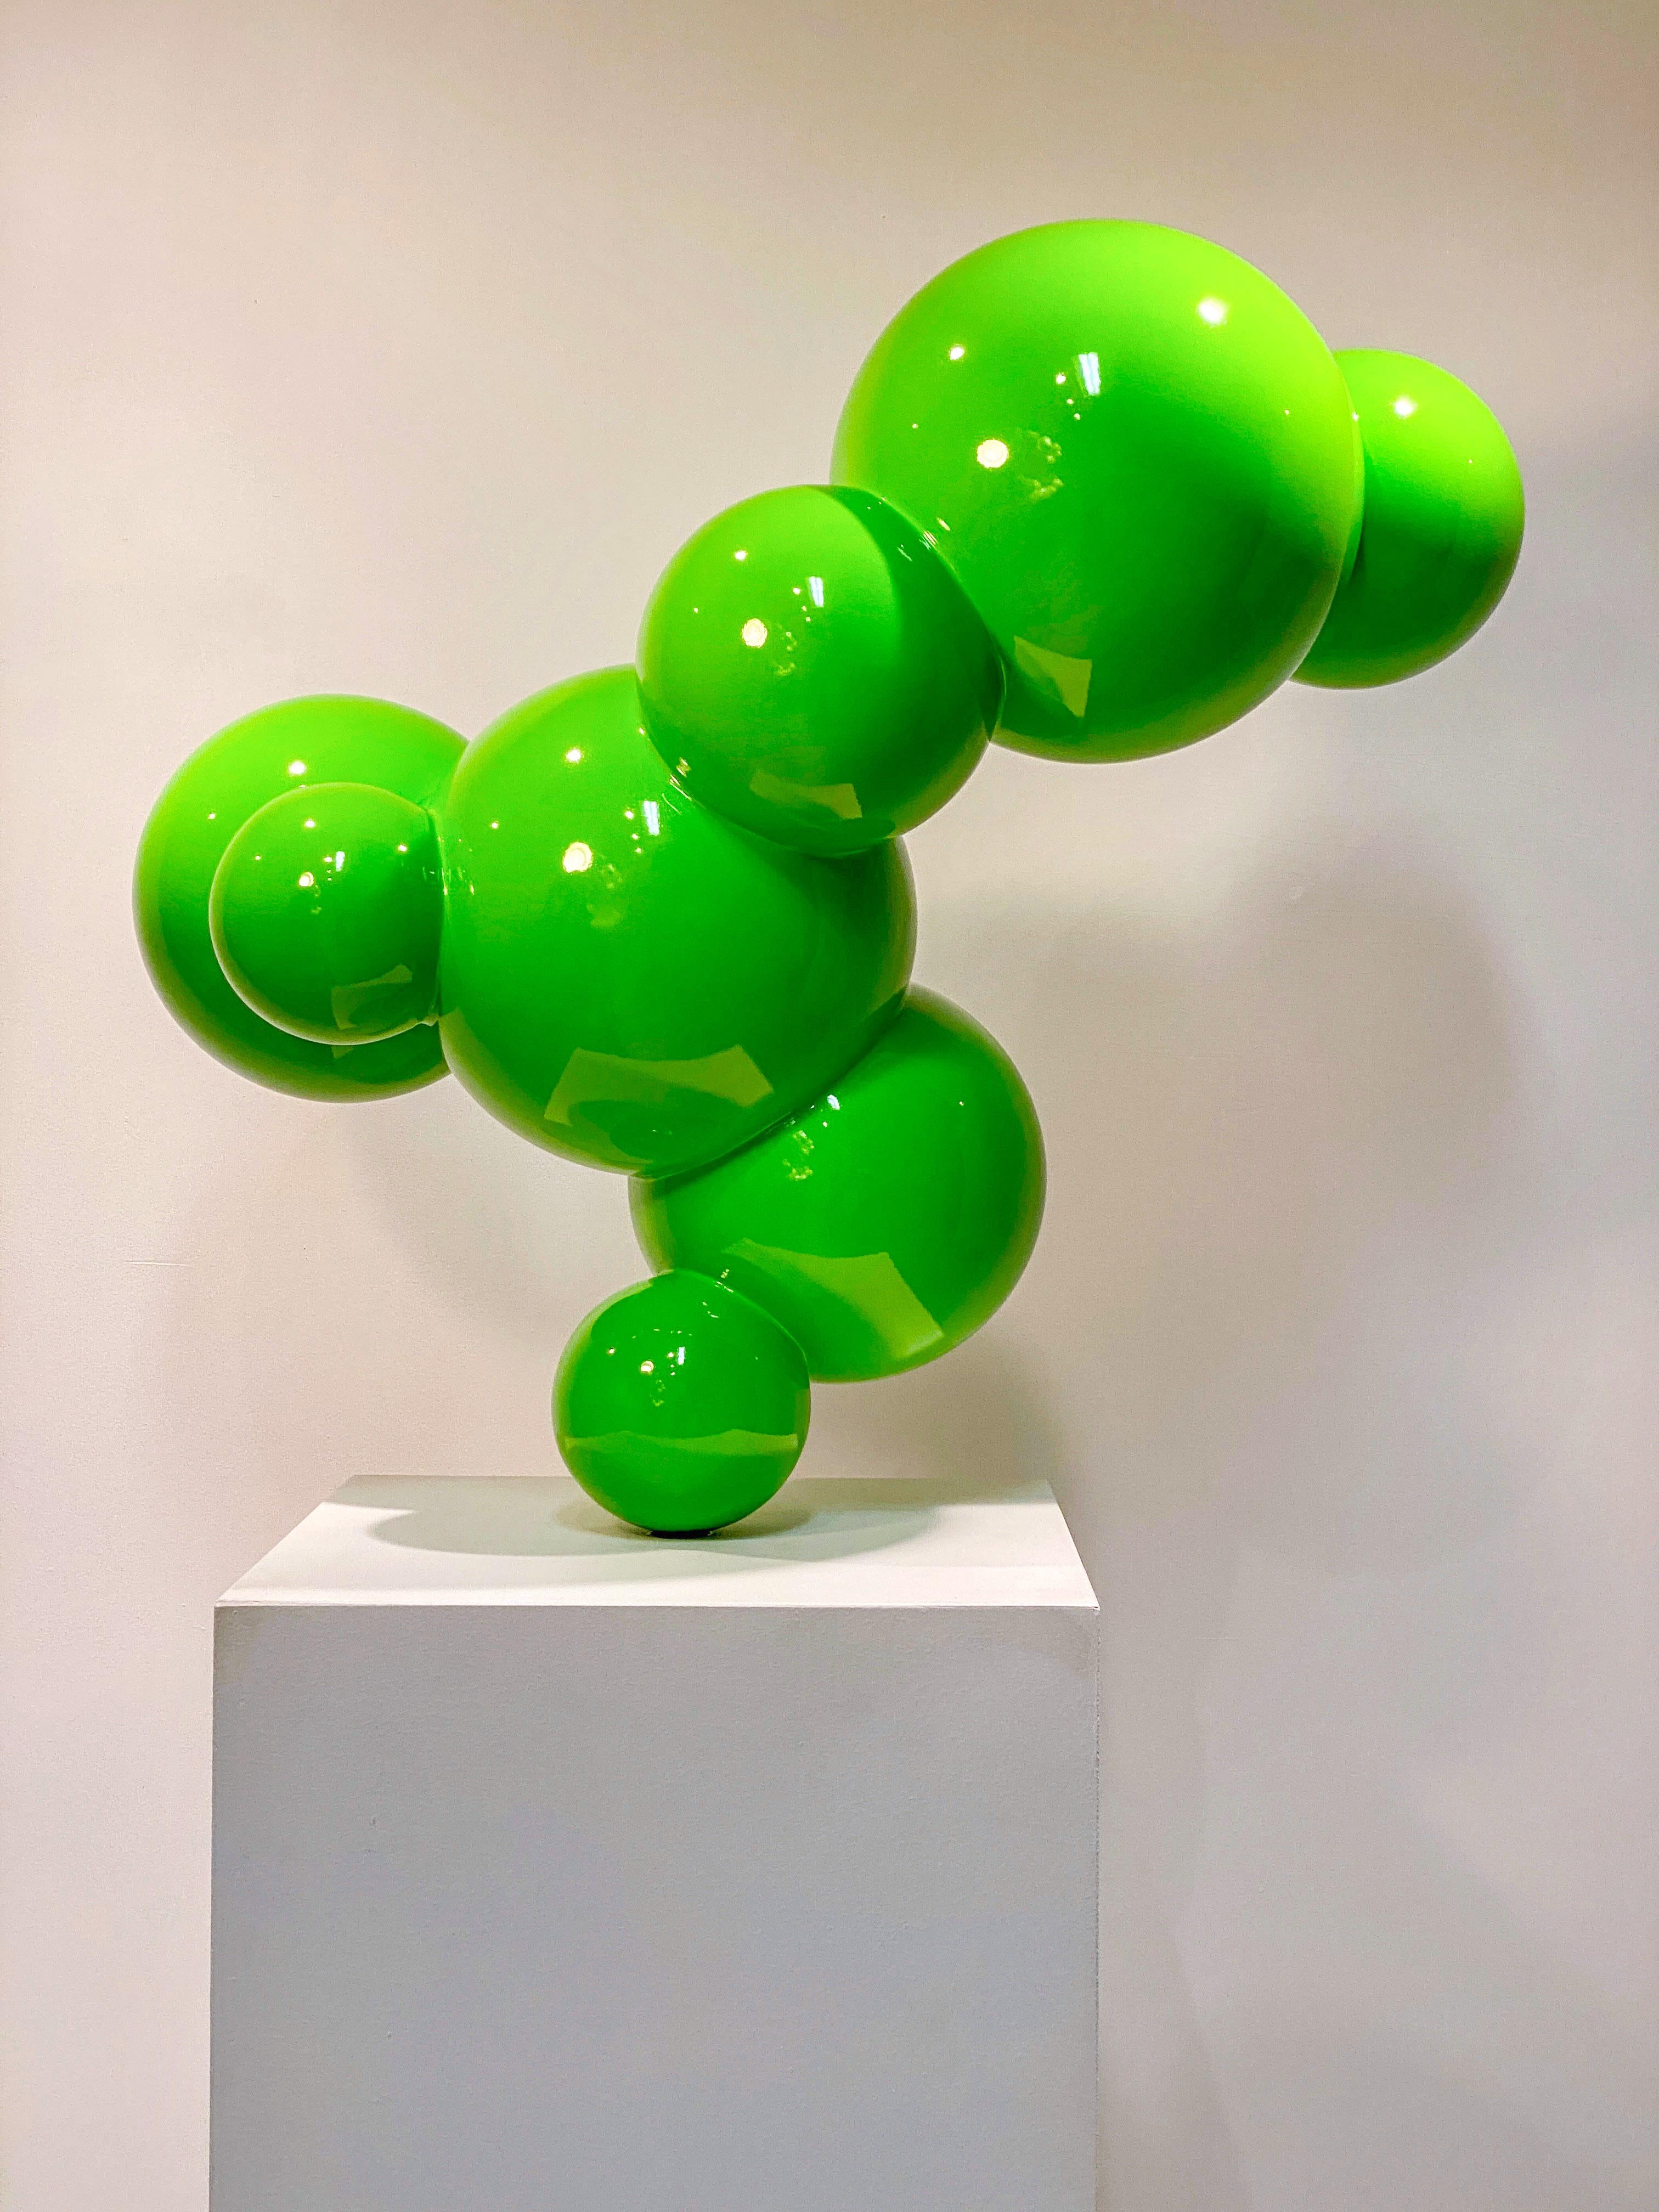 Algae 3 - vert, poli, sculpture géométrique abstraite en acier inoxydable peint - Sculpture de Alexander Caldwell